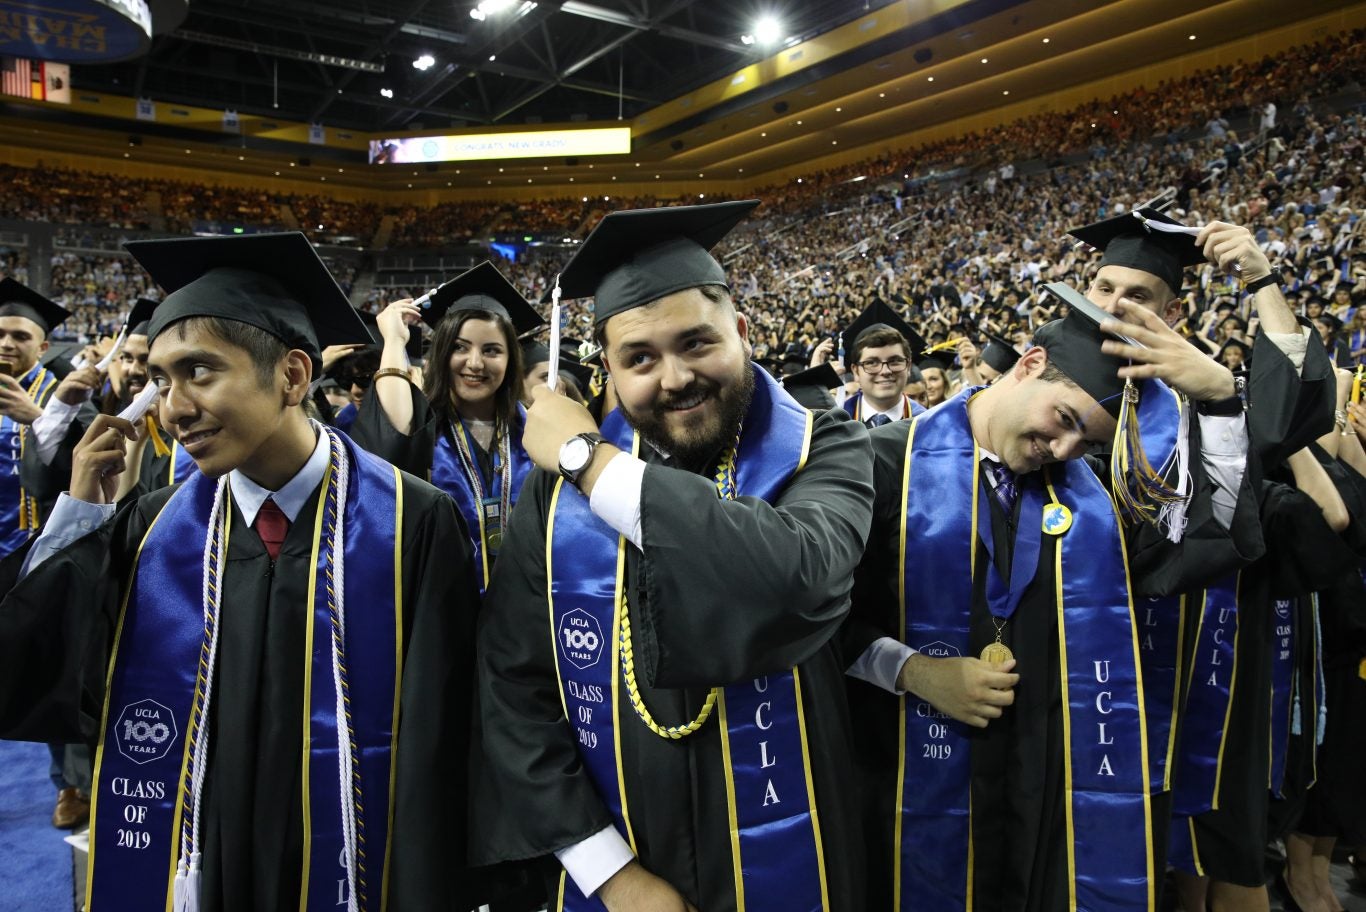 Centennial UCLA graduates celebrate at Pauley Pavilion commencement